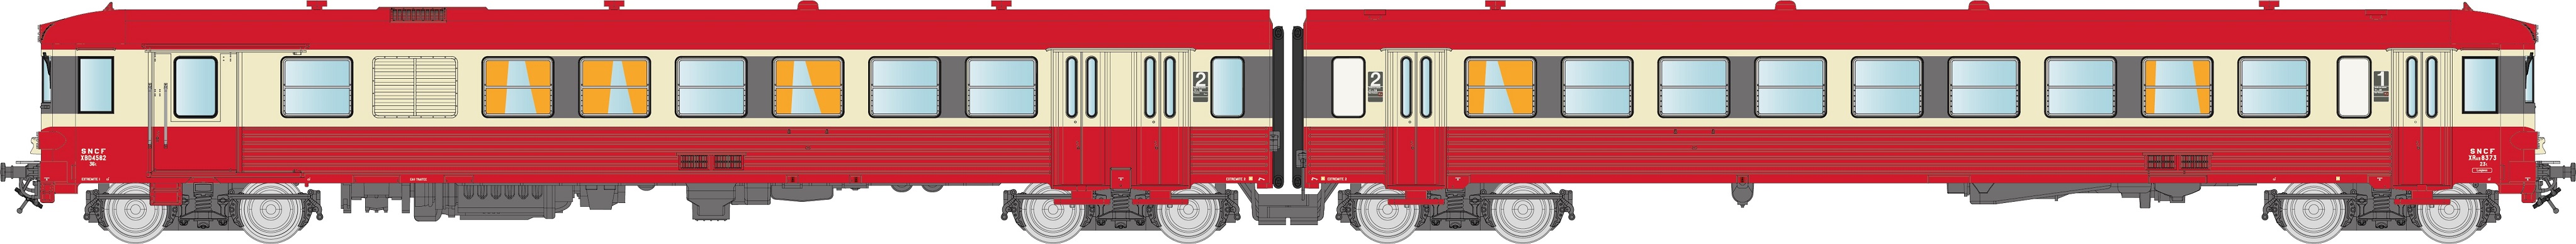 N SNCF EAD X4500 rot/cremeEp4 2-teil. Diesel-Triebzug Baureihe X 4500, 3 Spitzenlichter, lackiertes SNCF Kasten-Logo, mit rotem Dach, Betr.-Nr.: XBD4582 / XRAB 8373, Depot LONGEAU